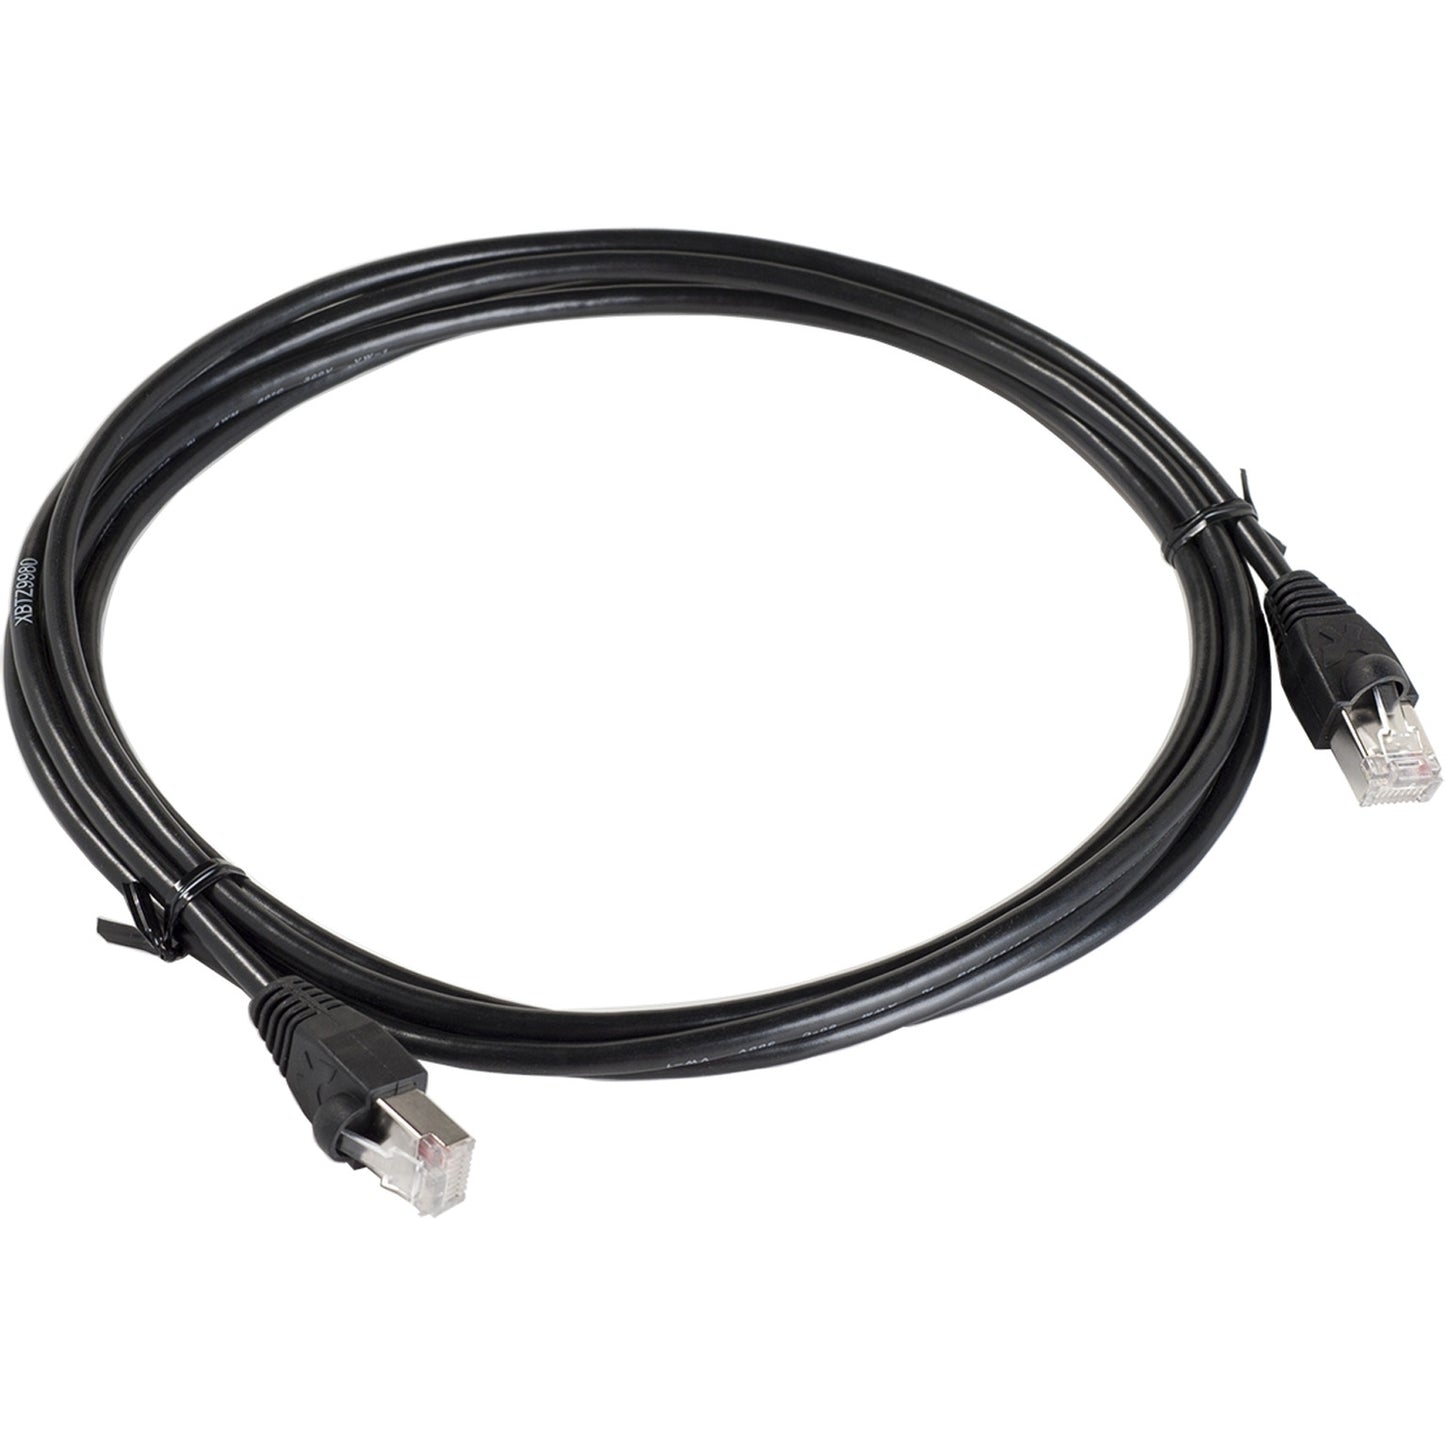 Cable M340 XBTN/R400 RJ45 - XBTZ9980 - SCHNEIDER